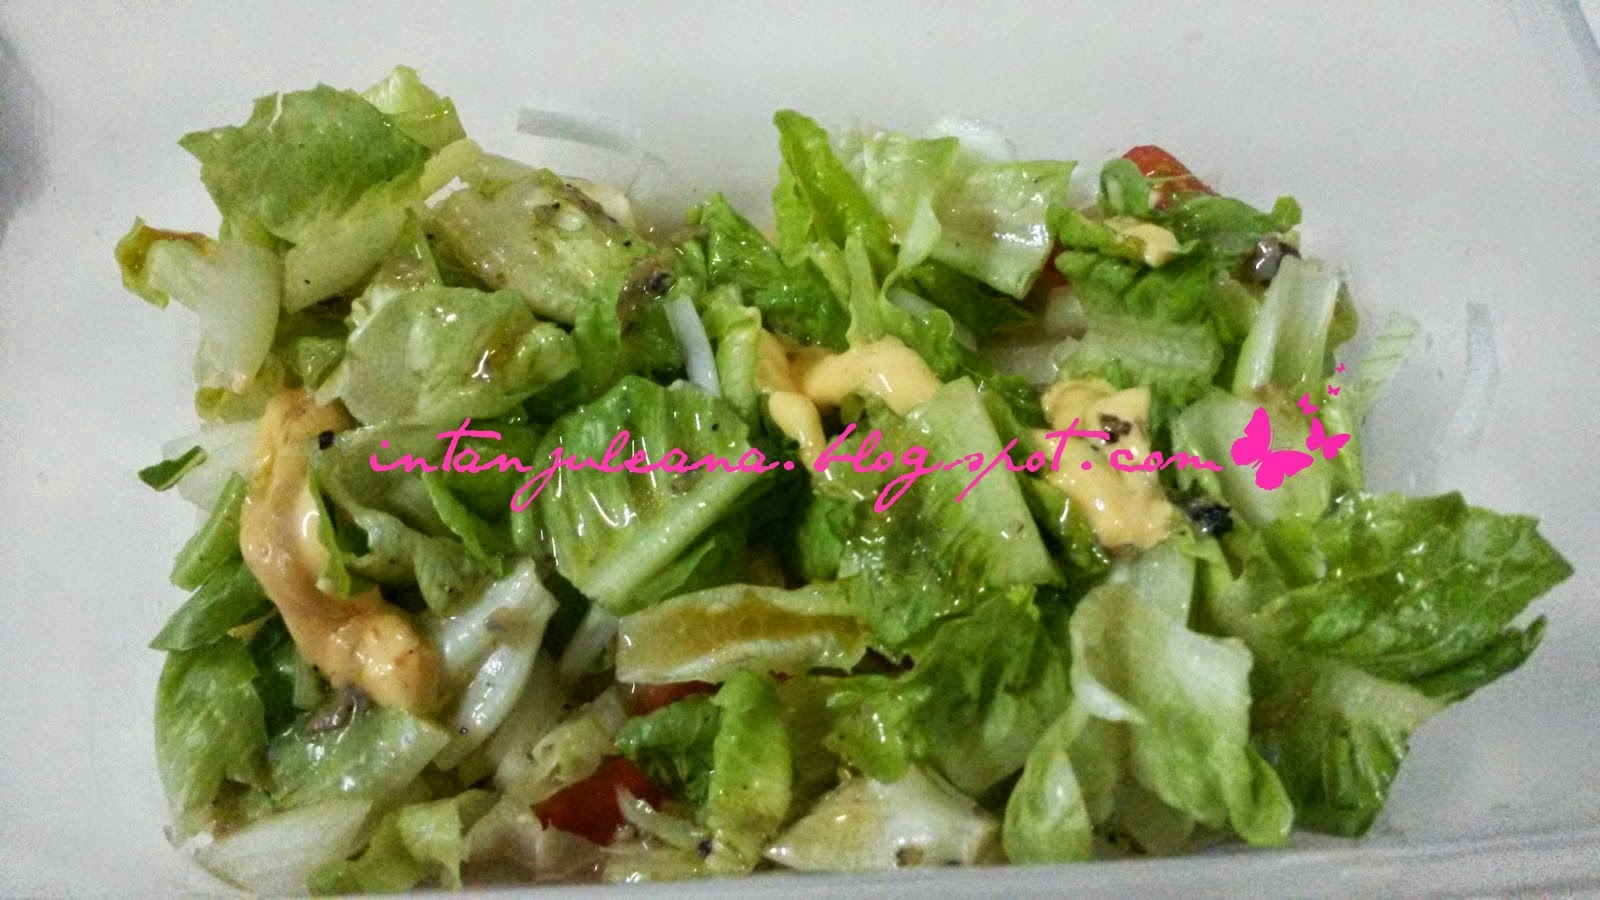 IJA's: Simple Salad - Menu Diet Atkins